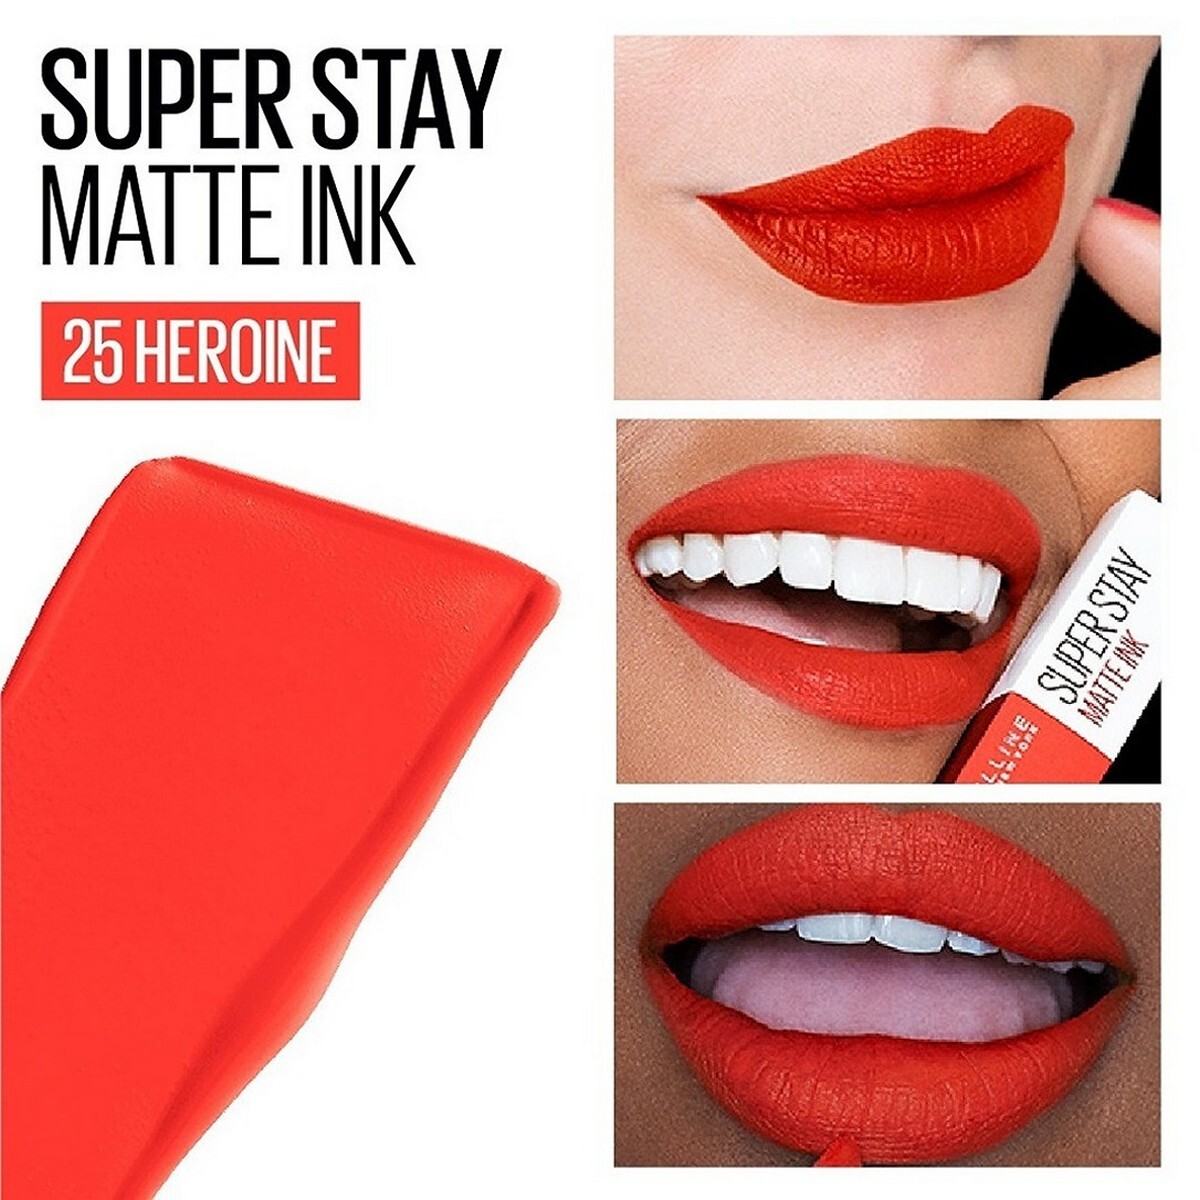 Maybelline New York Super Stay Matte Ink Liquid Lipstick, 25 Heroine, 5g